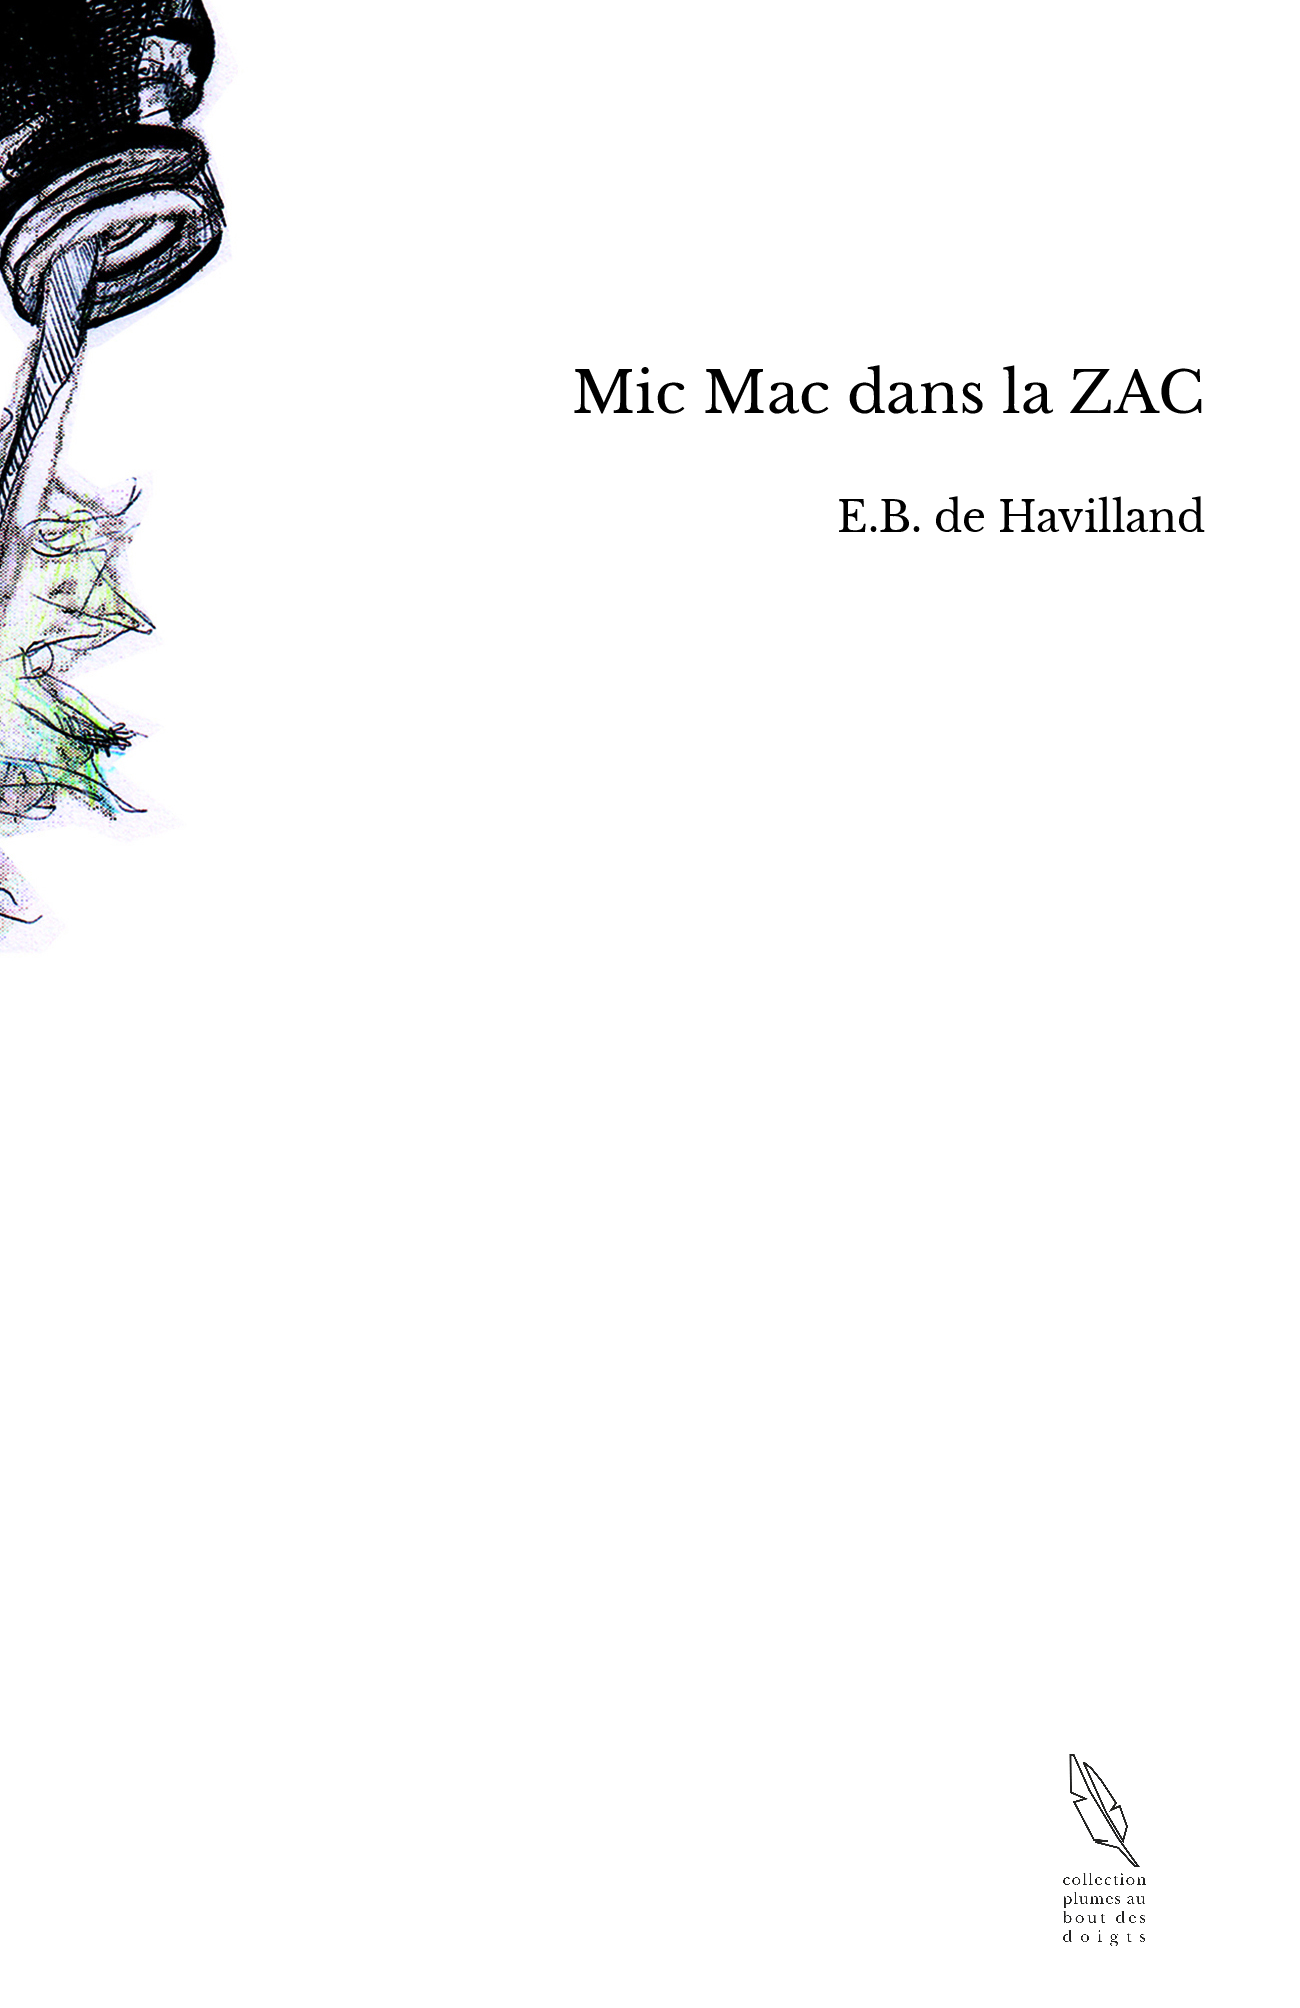 Mic Mac dans la ZAC